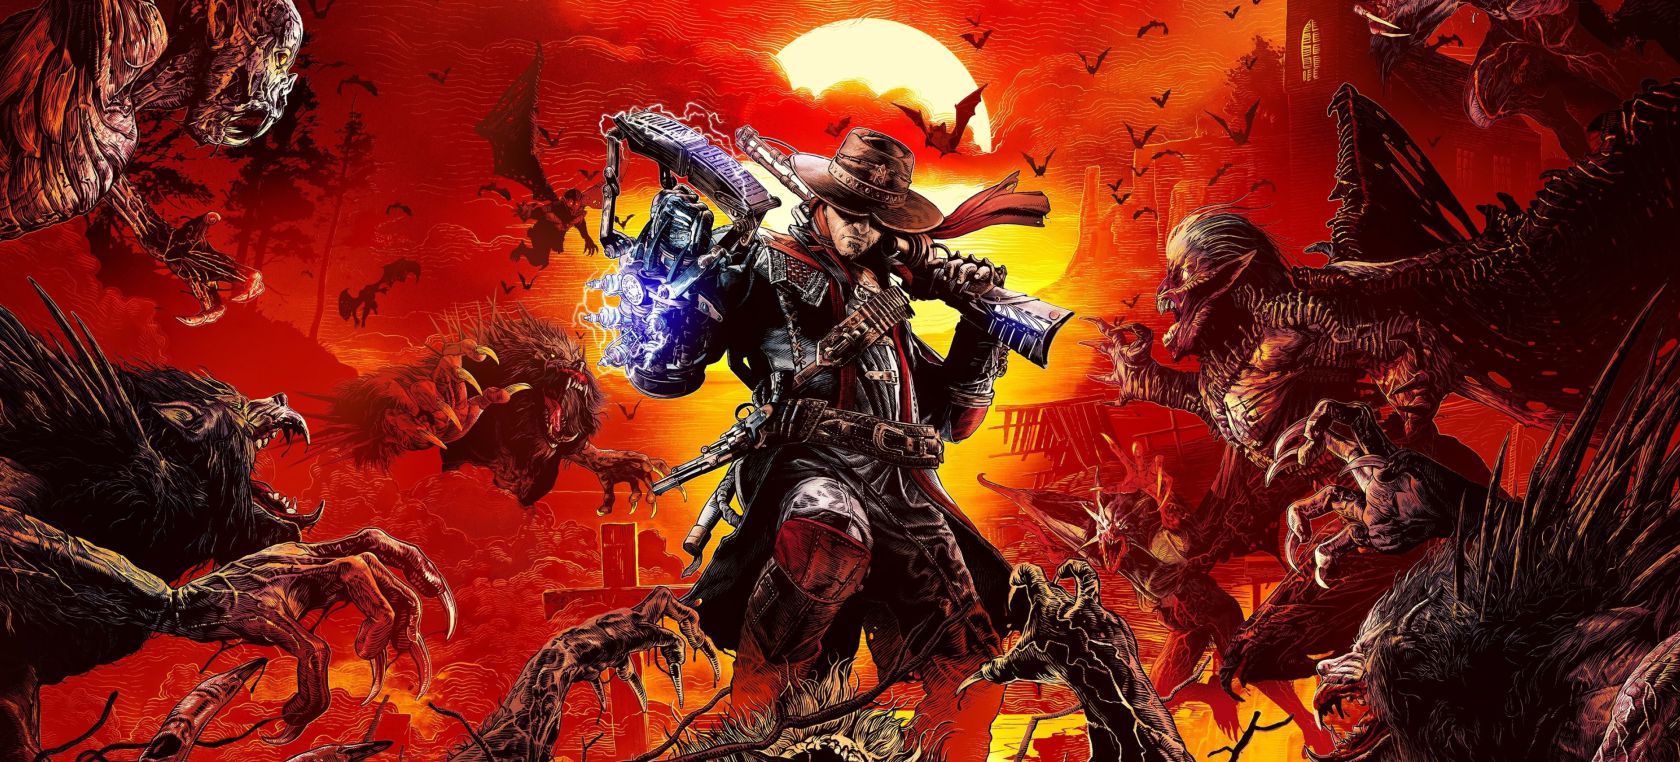 El salvaje Evil West confirma requisitos, resolución y rendimiento en PC,  PlayStation y Xbox - Meristation